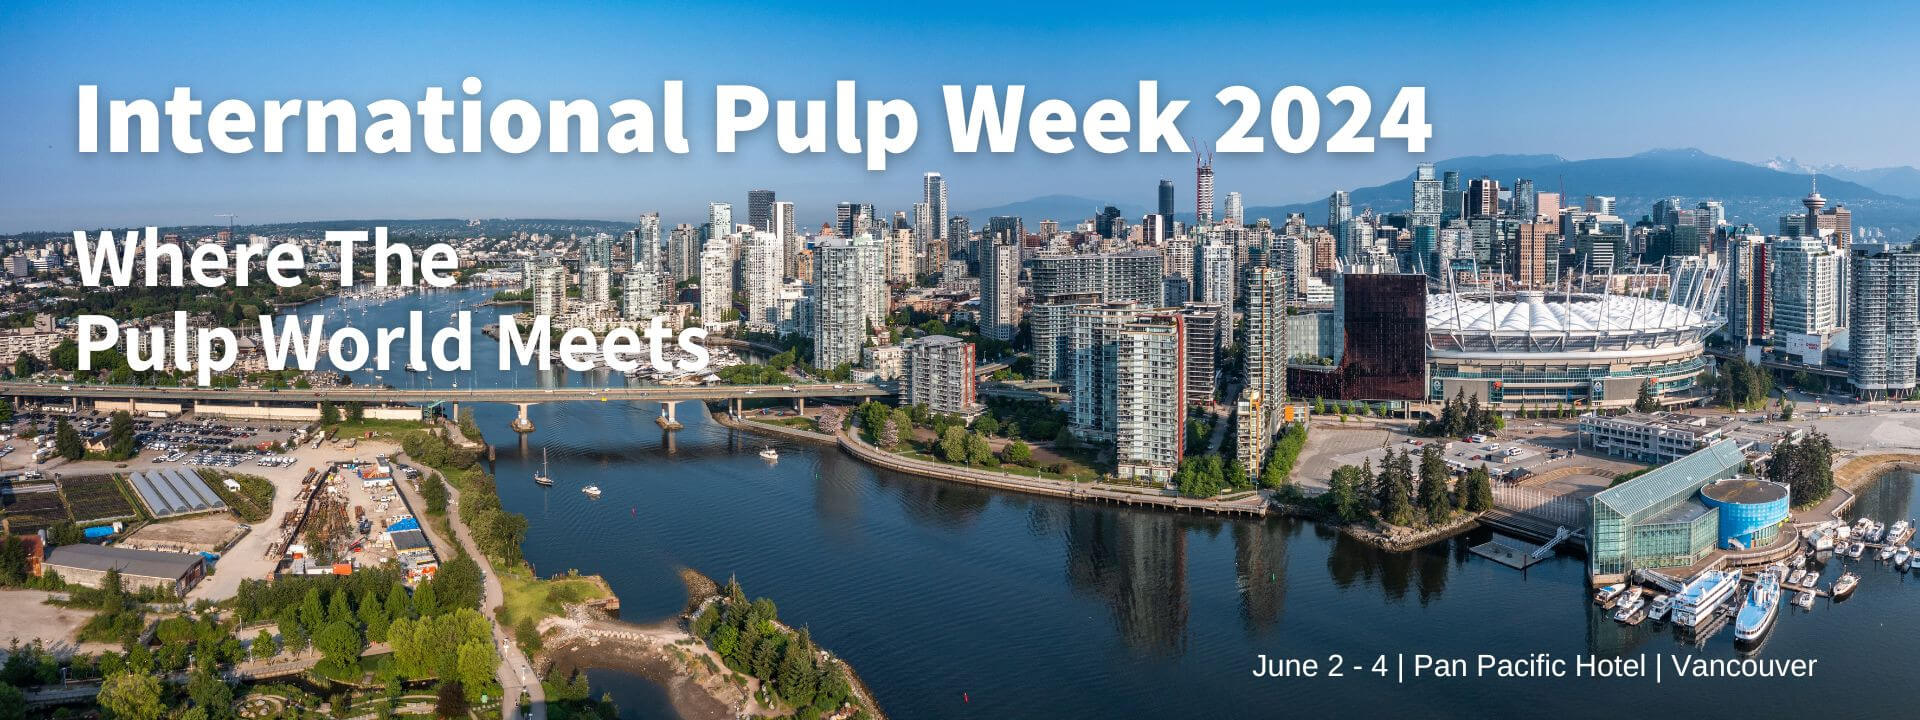 International Pulp Week 2024 International Pulp Week